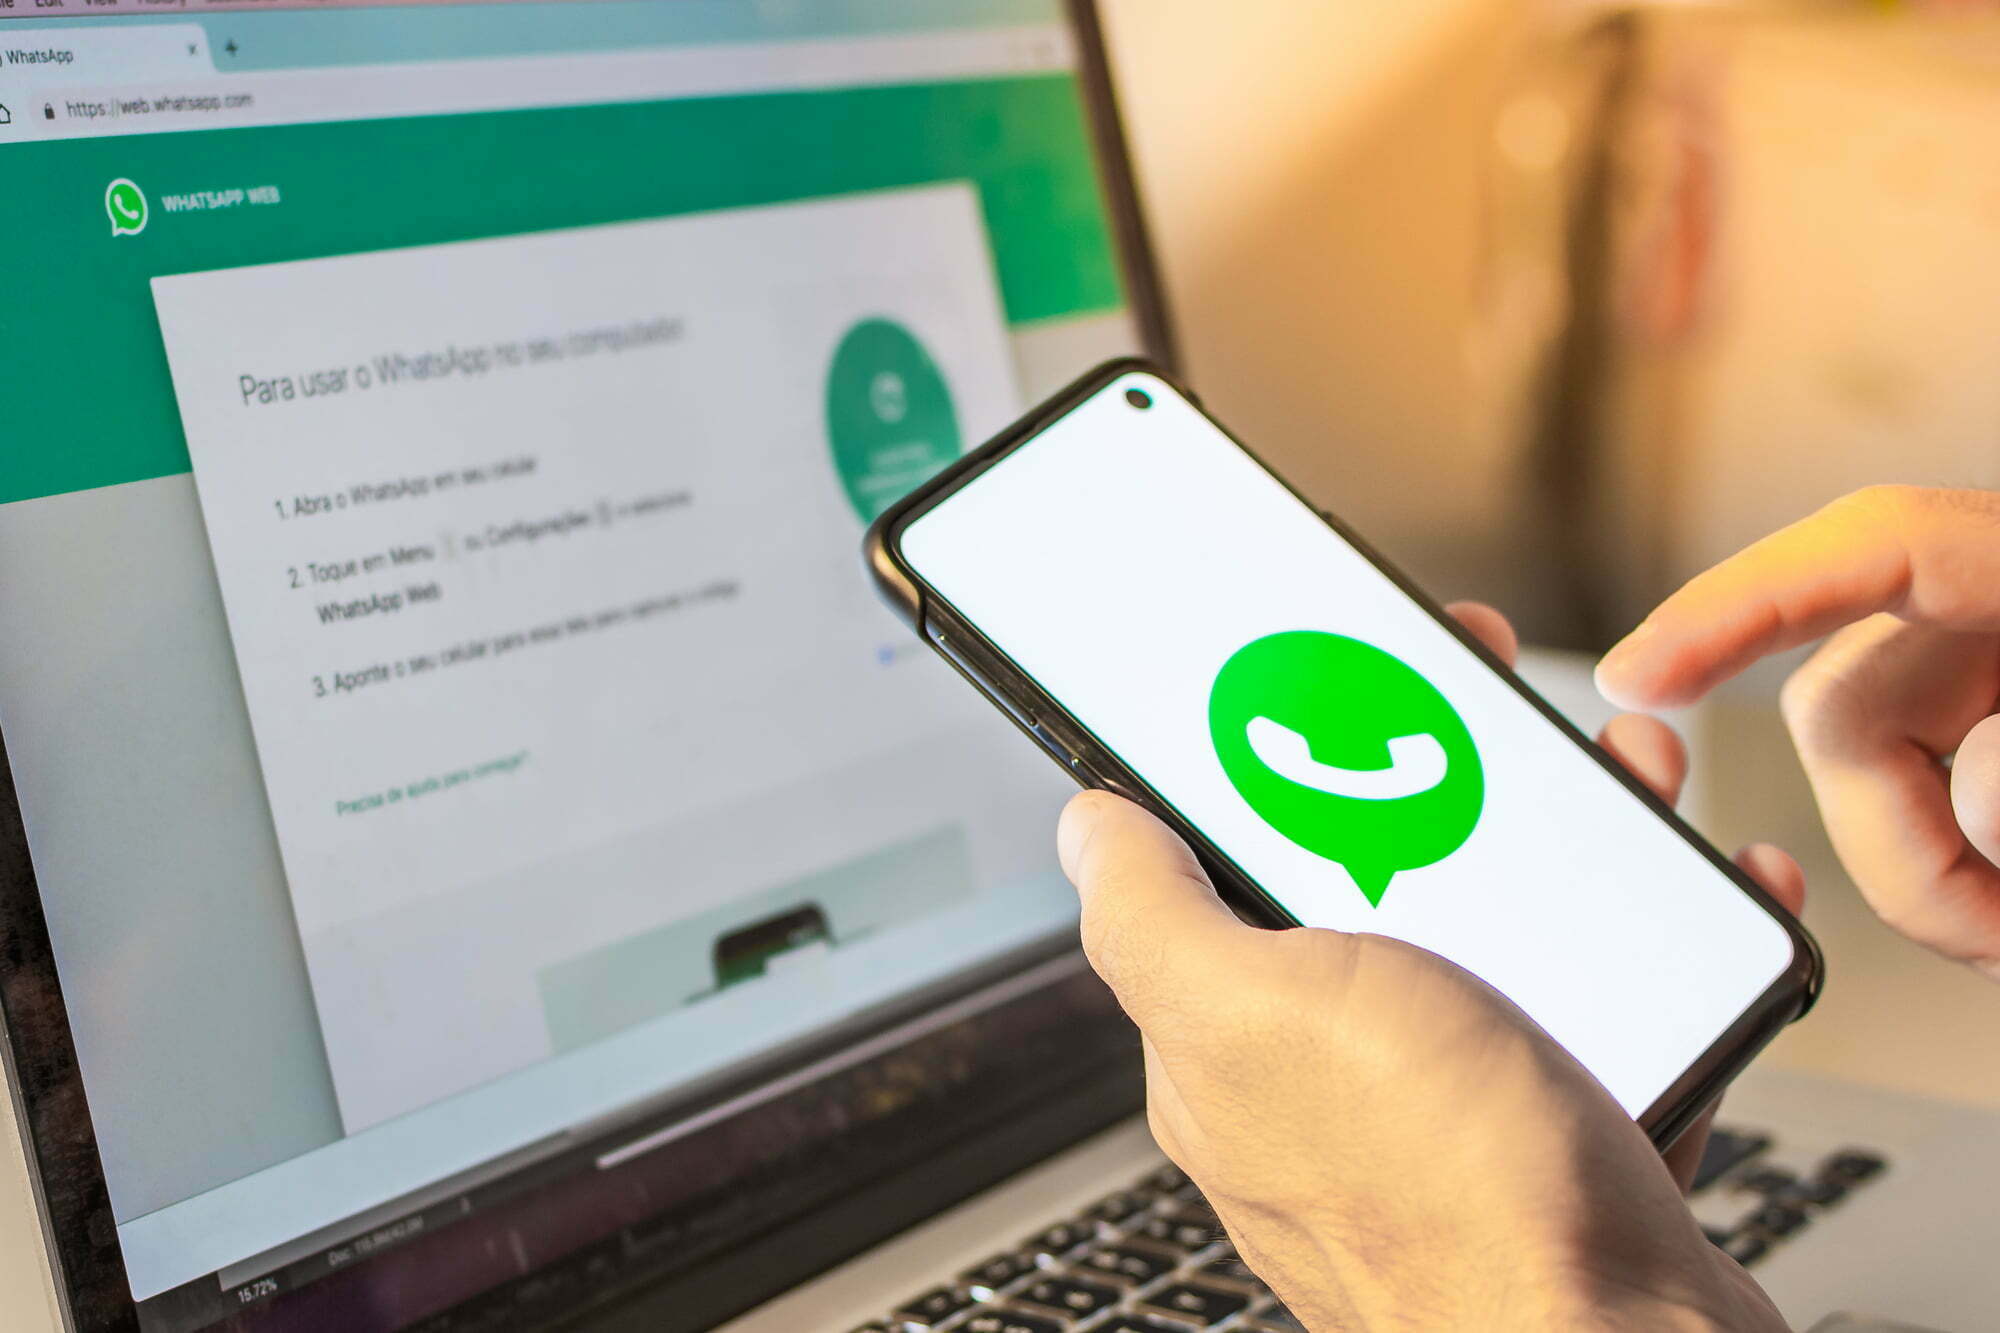 Milhares de usuários reportam problemas ao usar Whatsapp